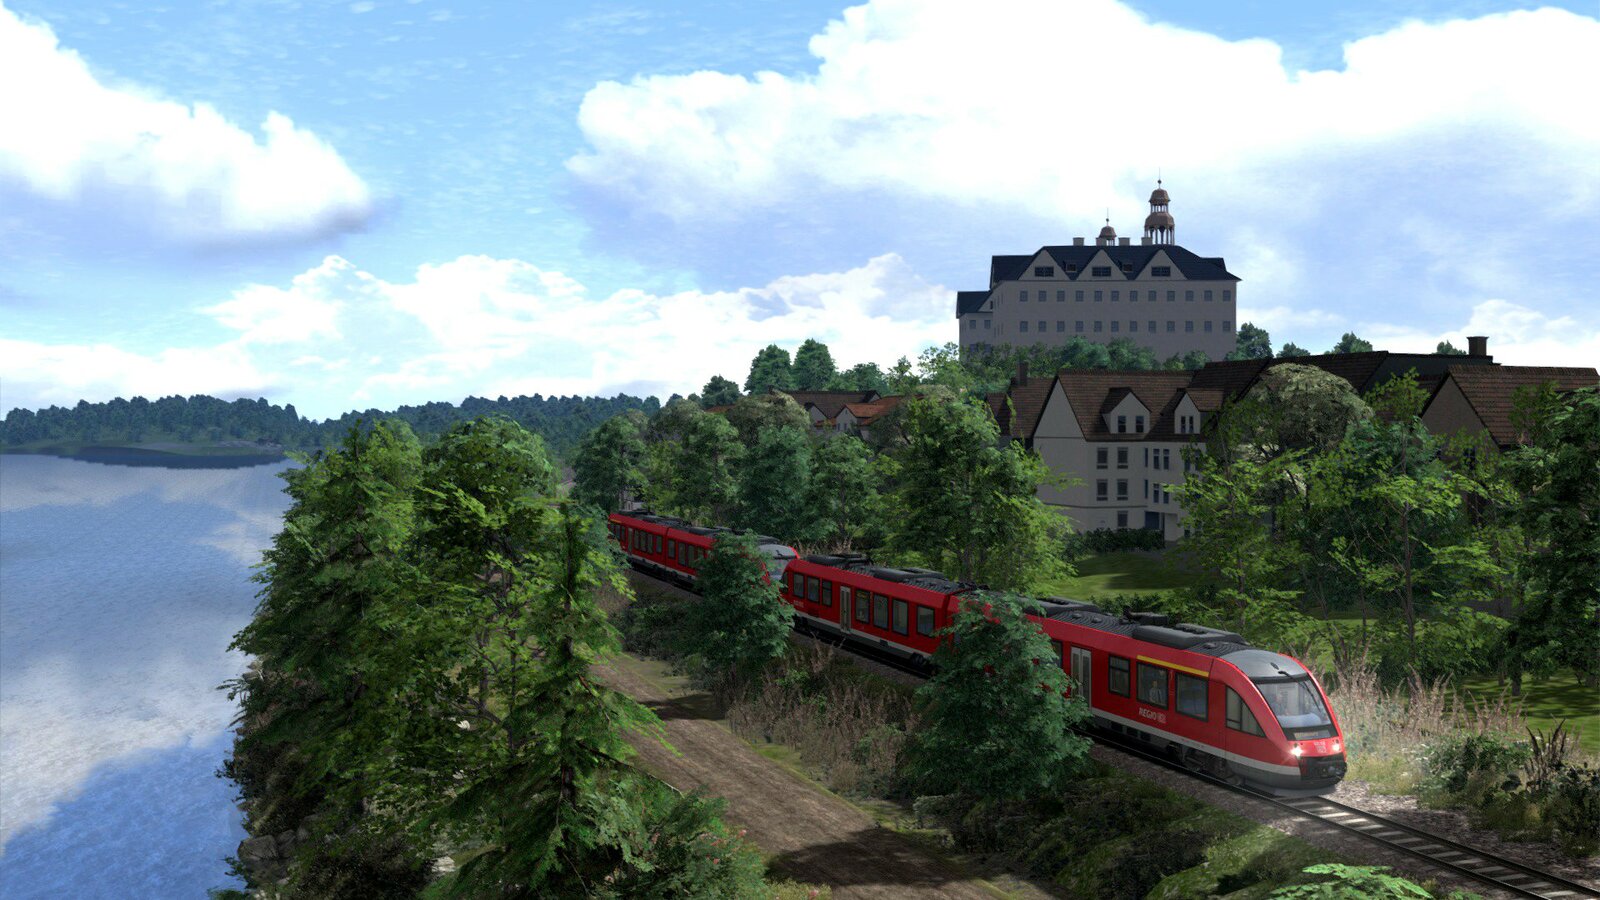 Train Simulator 2021 - Deluxe Edition